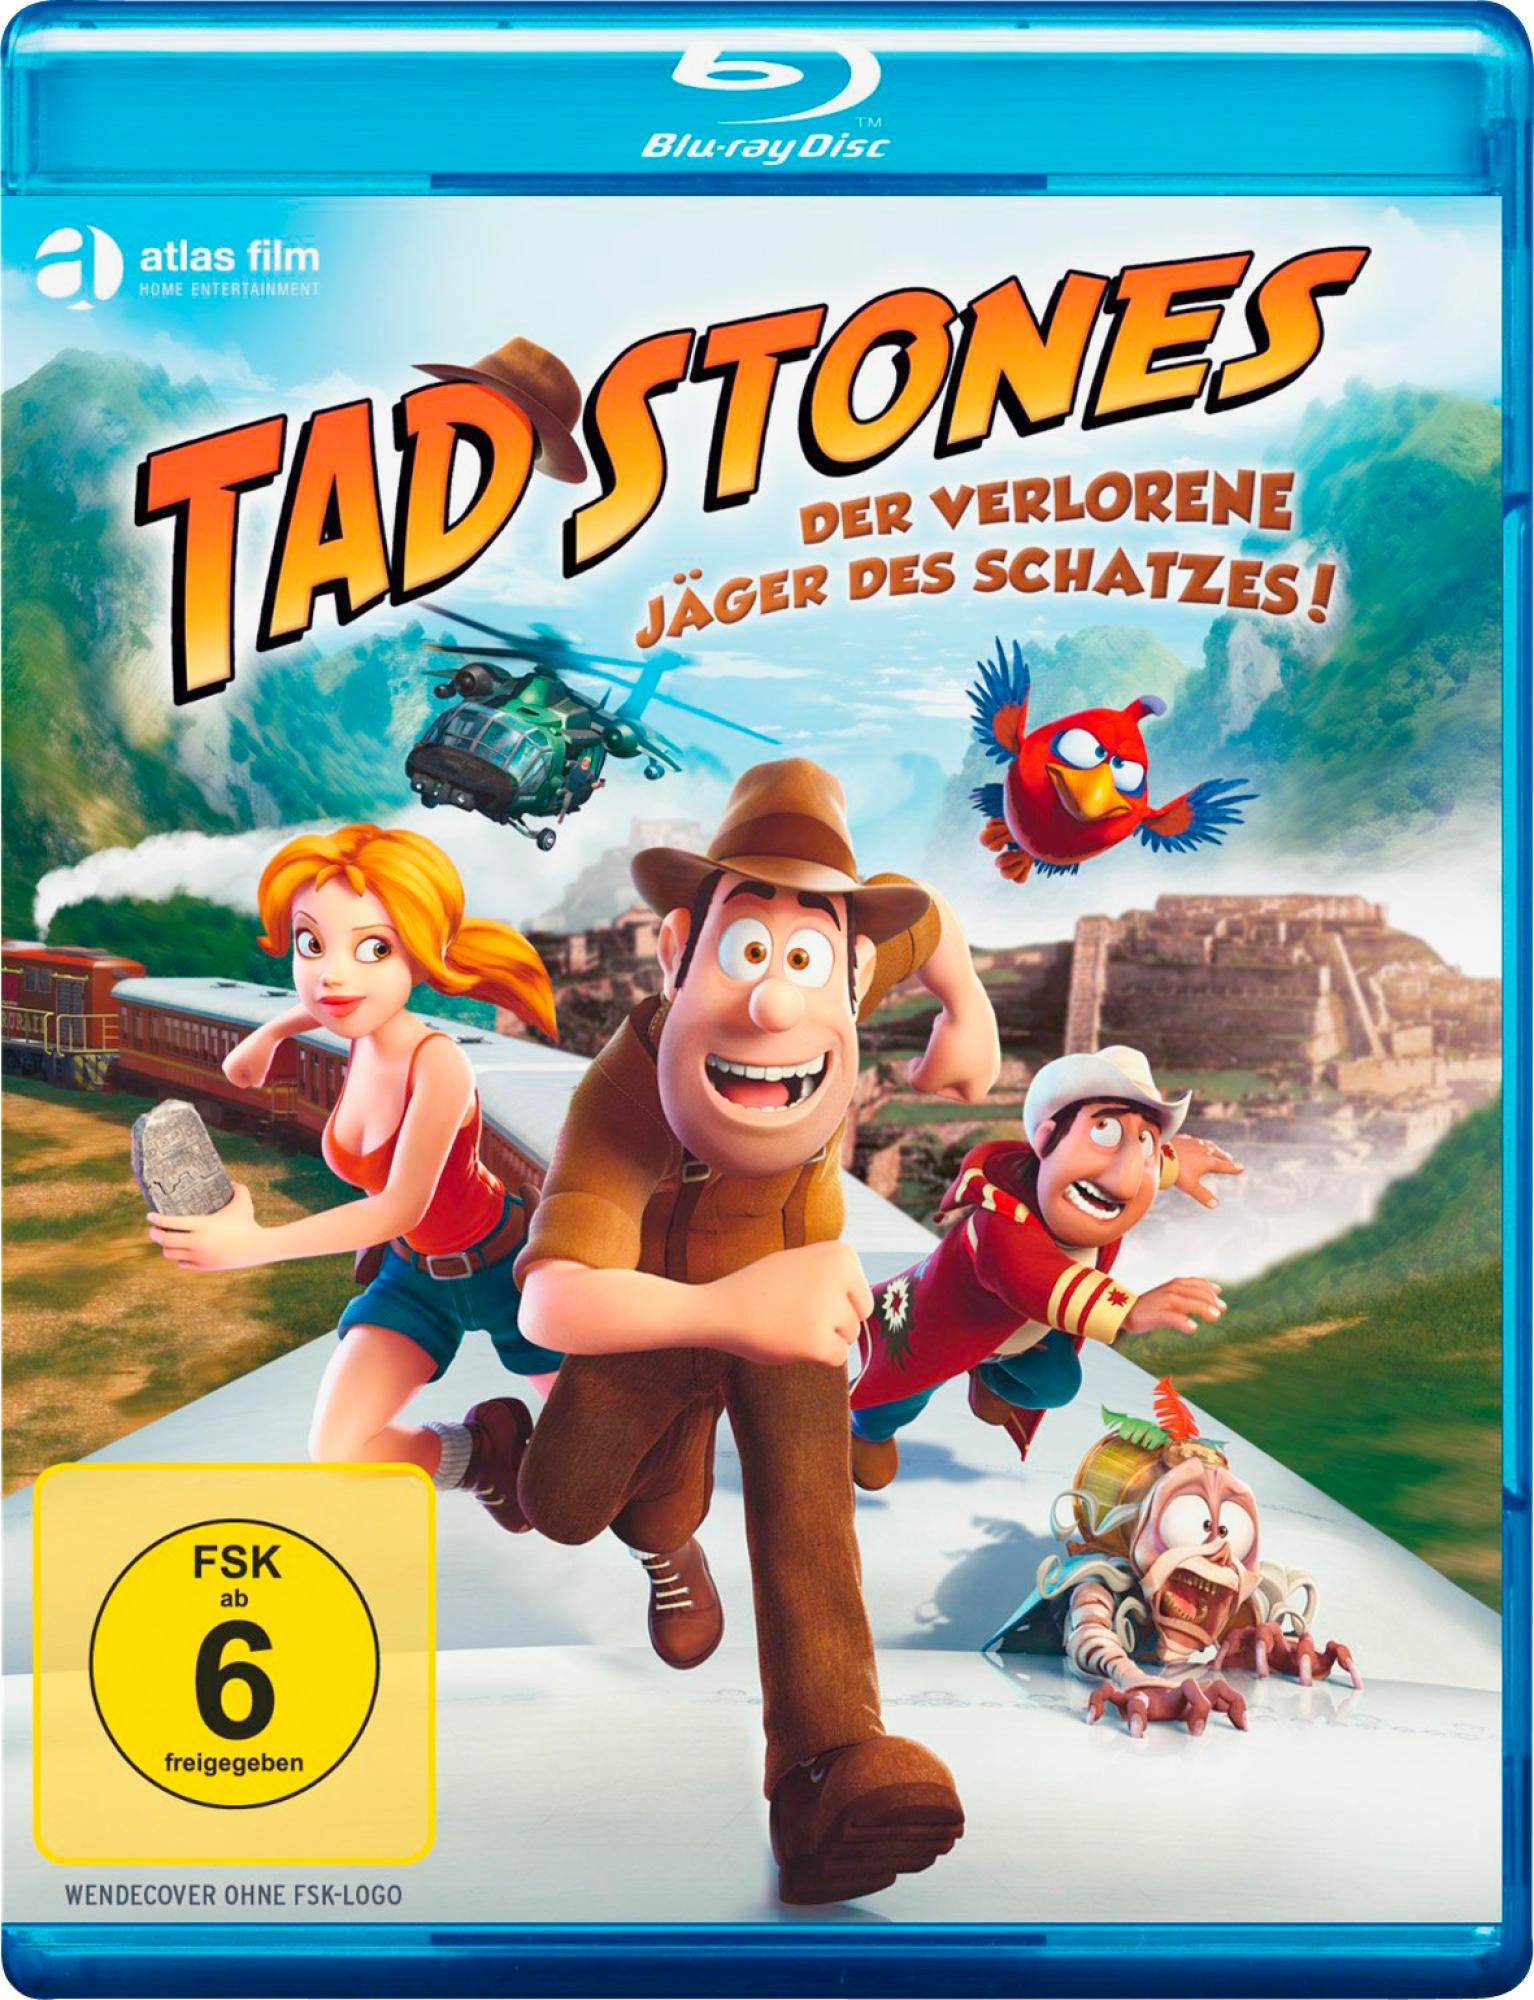 TAD STONES-DER JÄGER SCHATZES DES VERLORENE Blu-ray